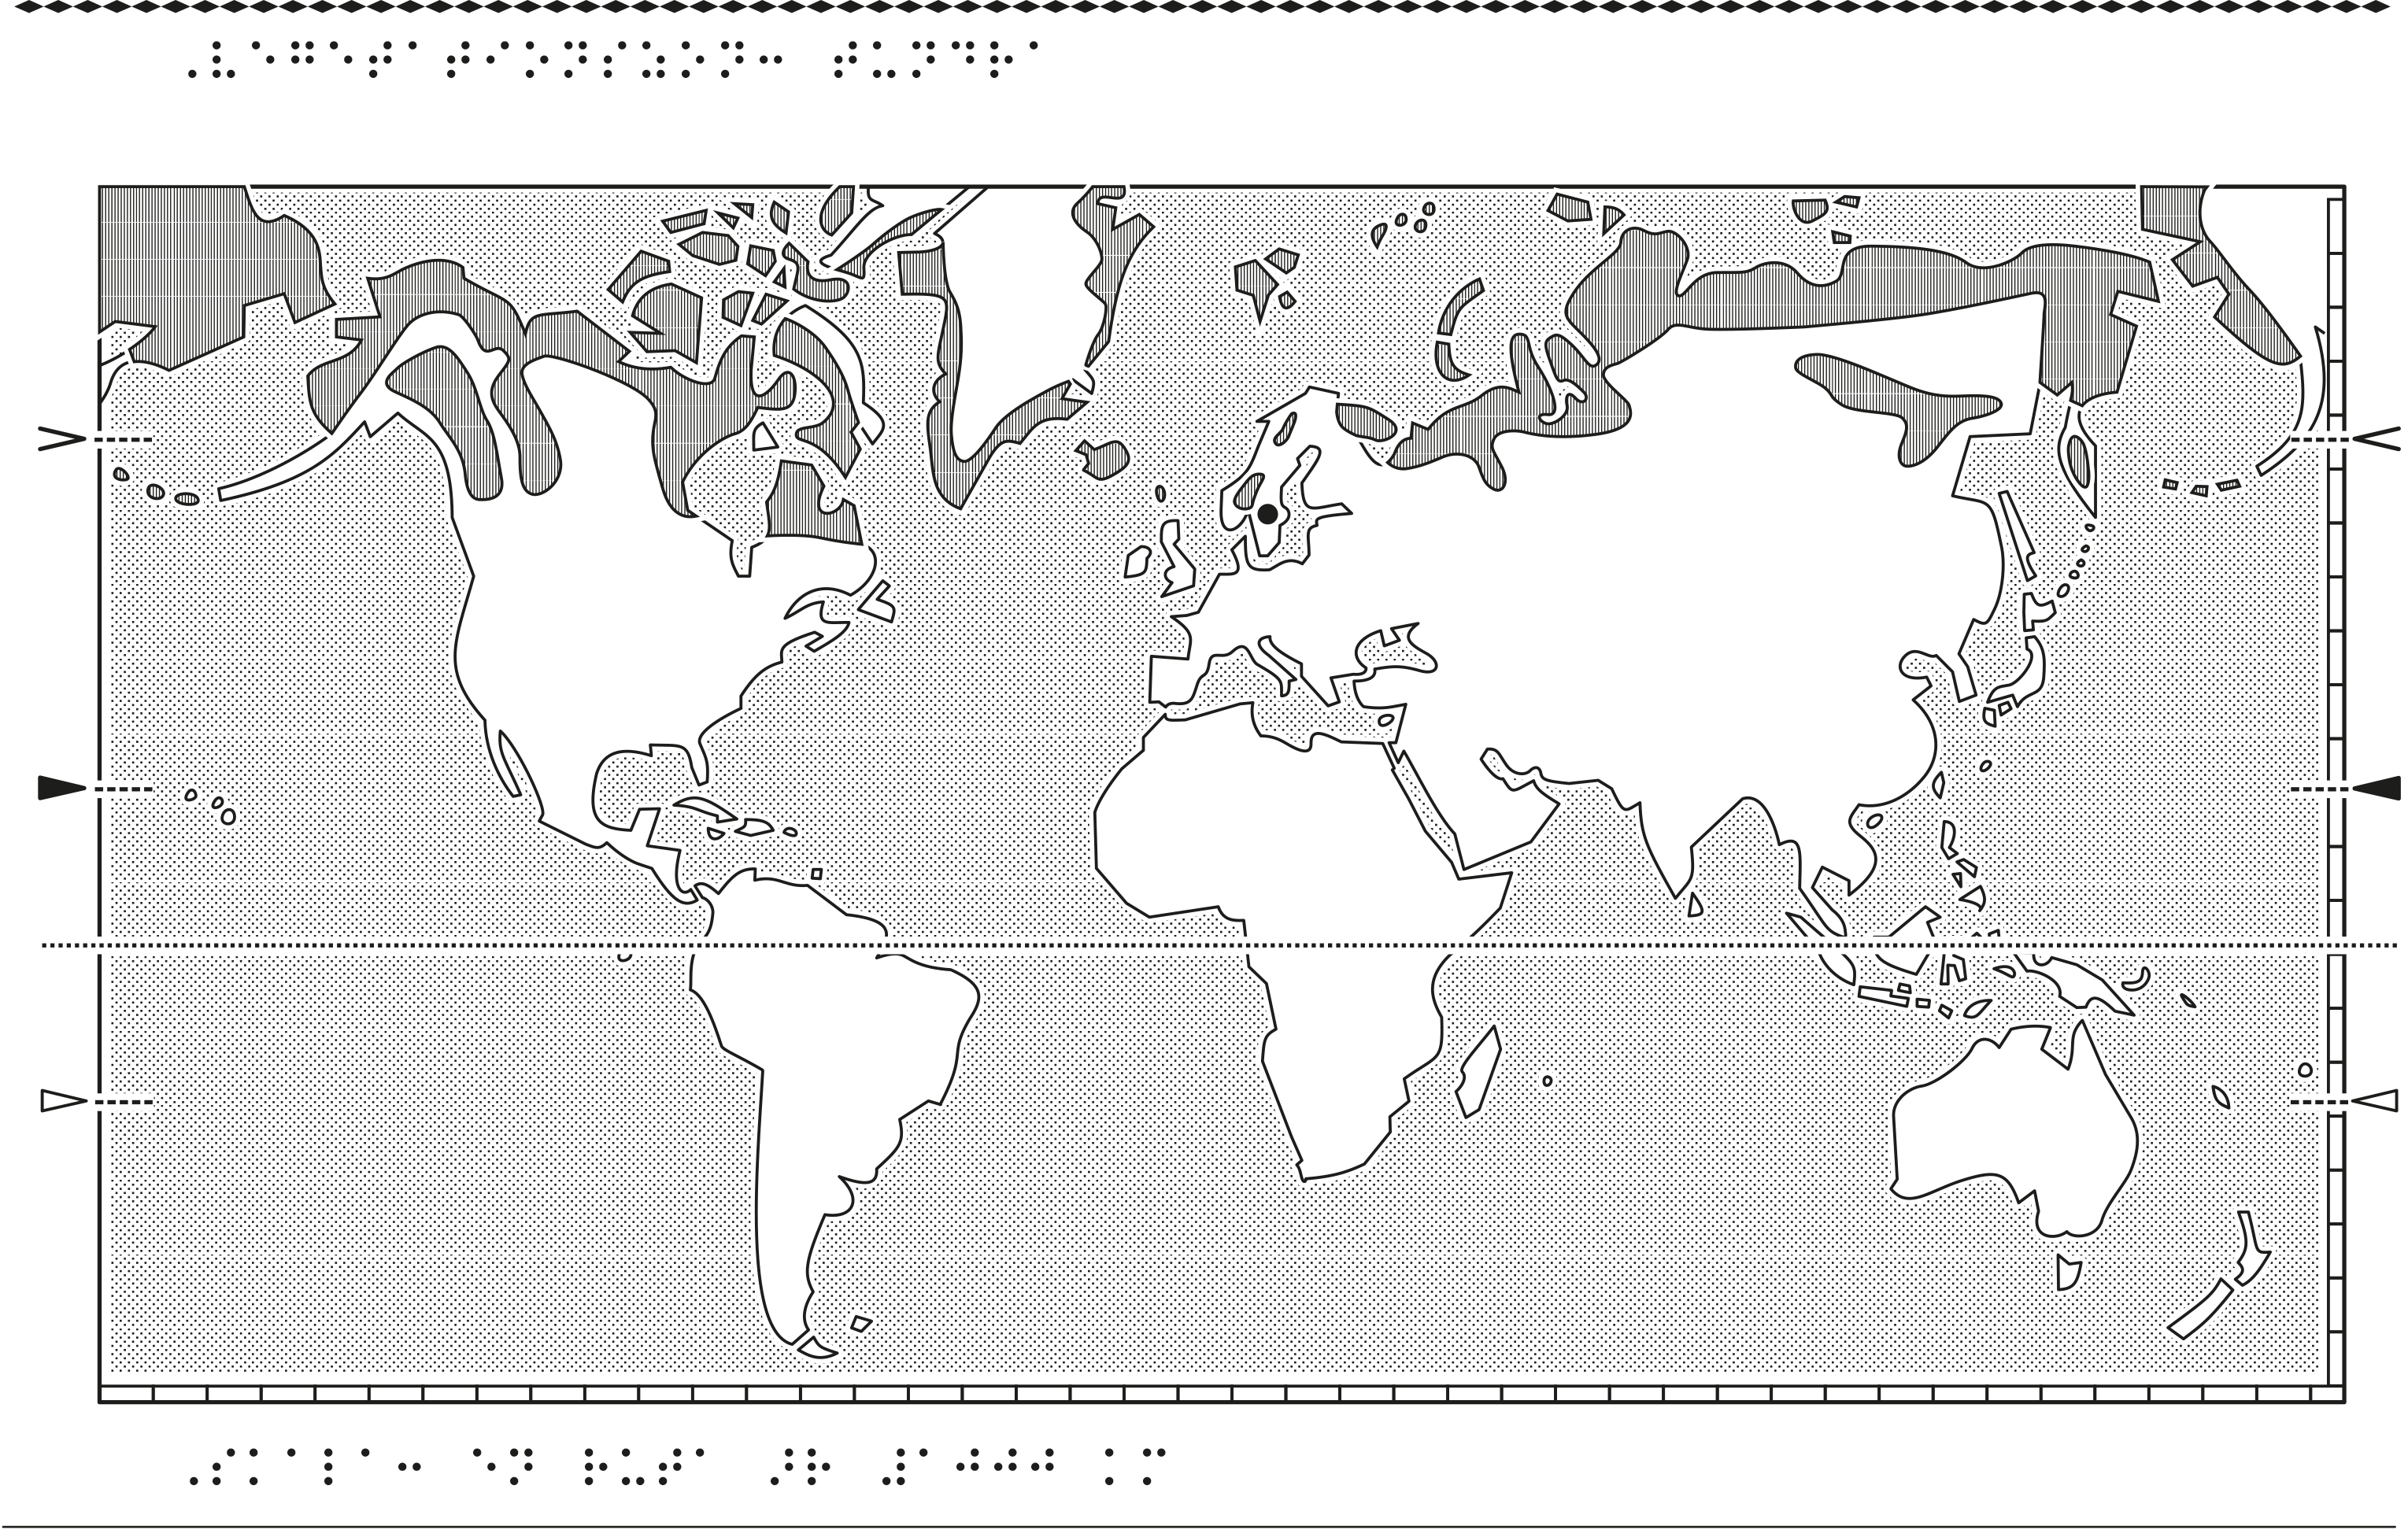 Världskarta i relief med tundra markerat.